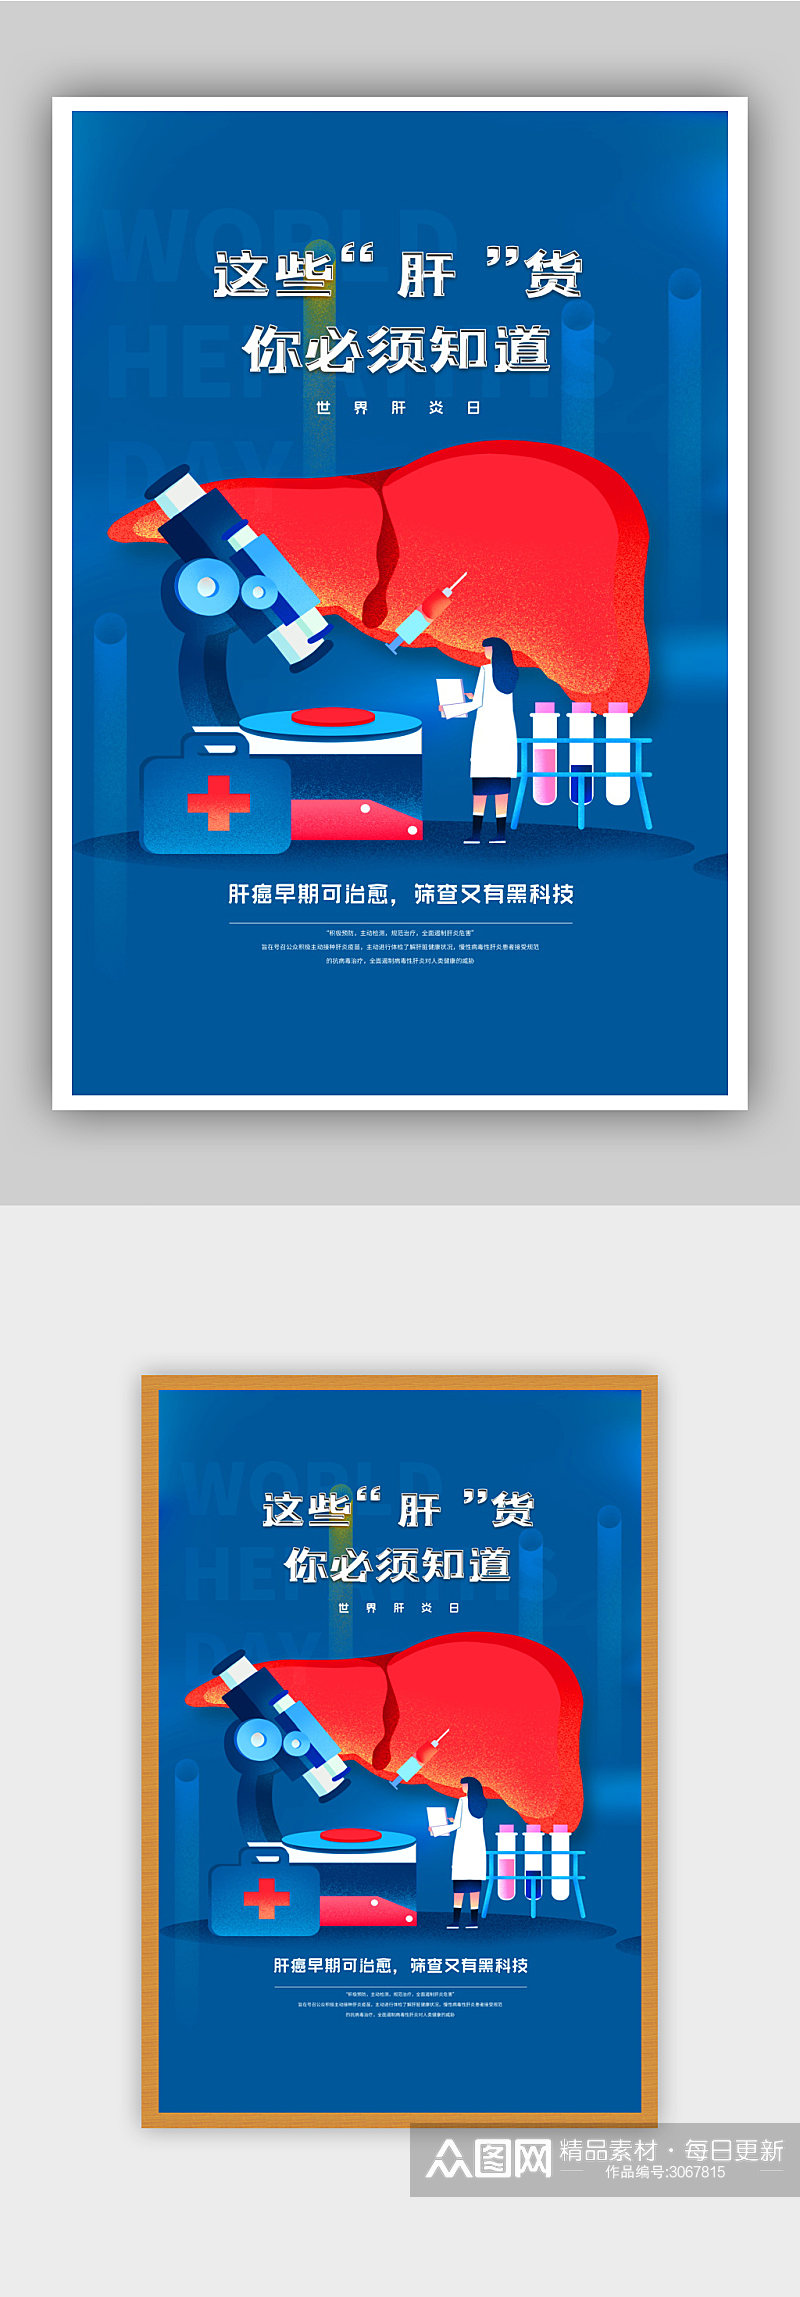 世界肝炎日保护肝脏宣传海报素材